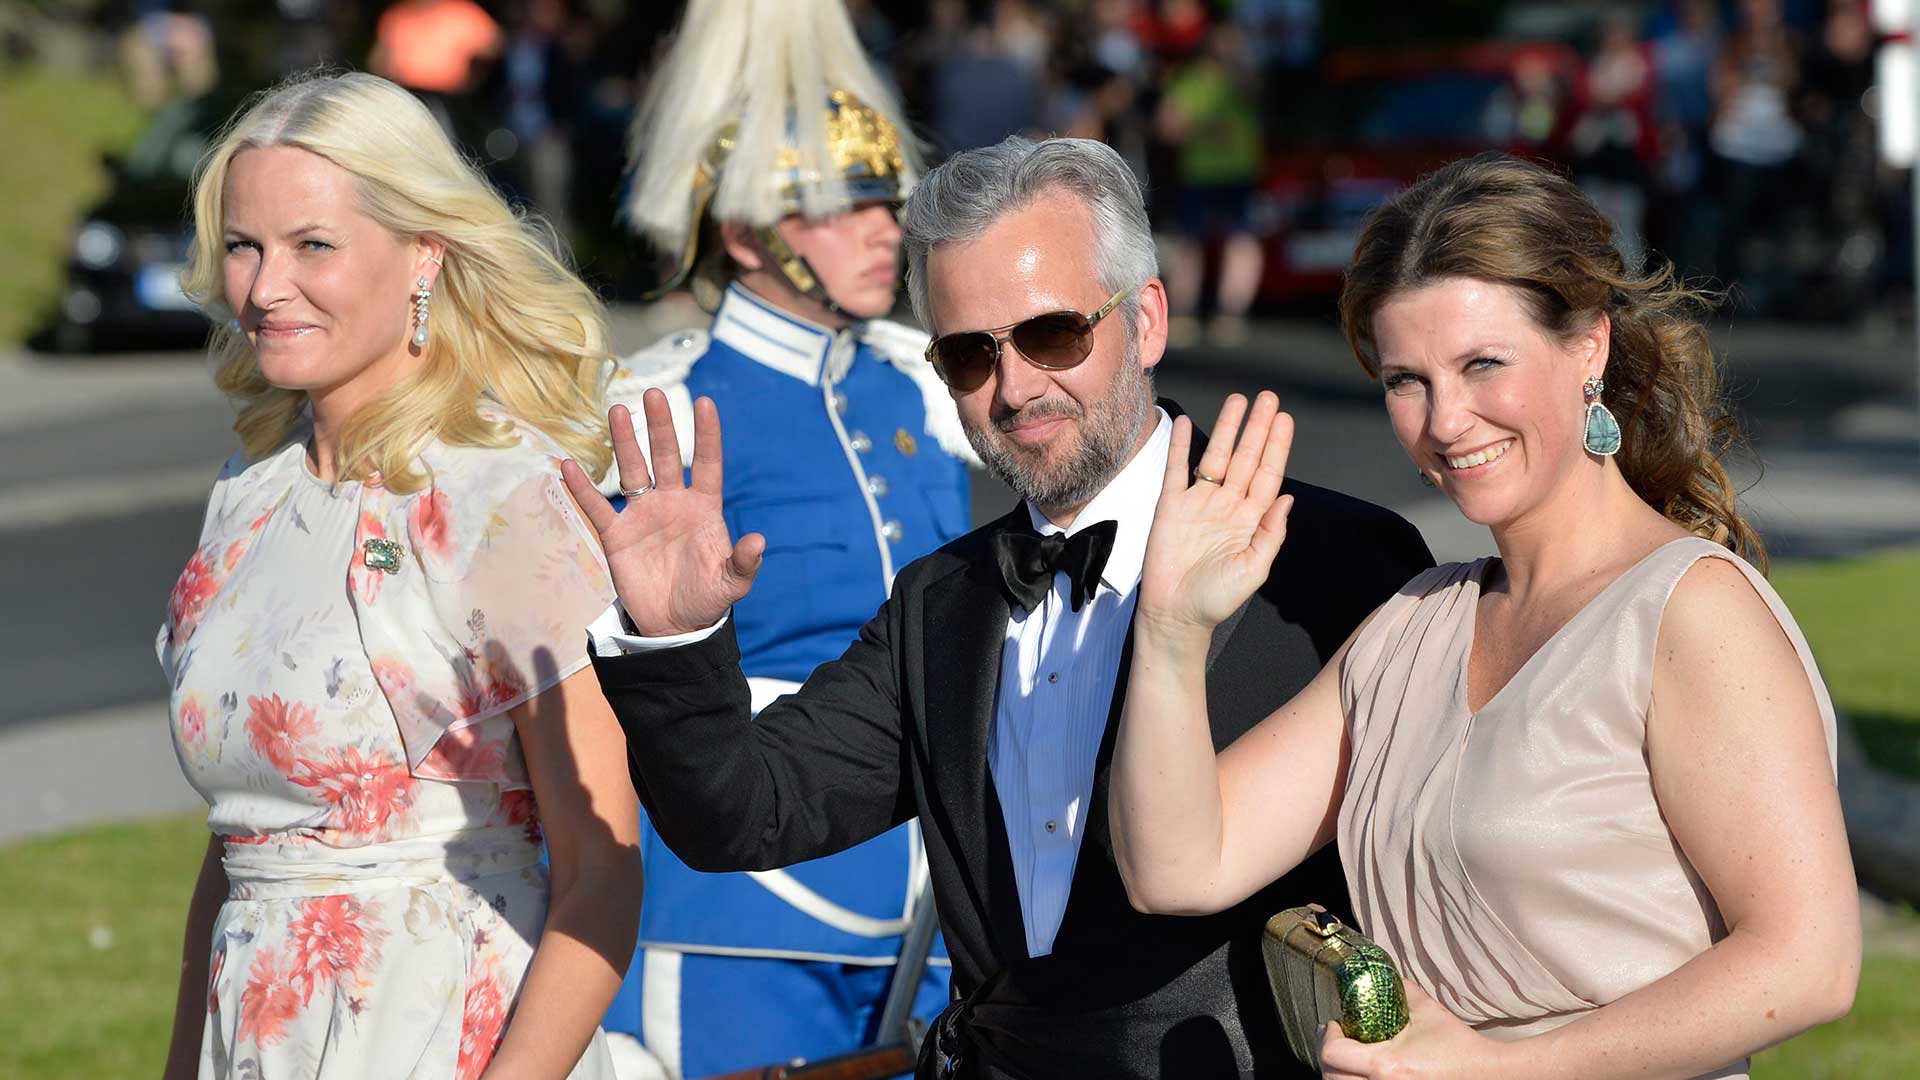 El escritor Ari Behn, exmarido de la princesa Marta Luisa de Noruega, se suicida a los 47 años